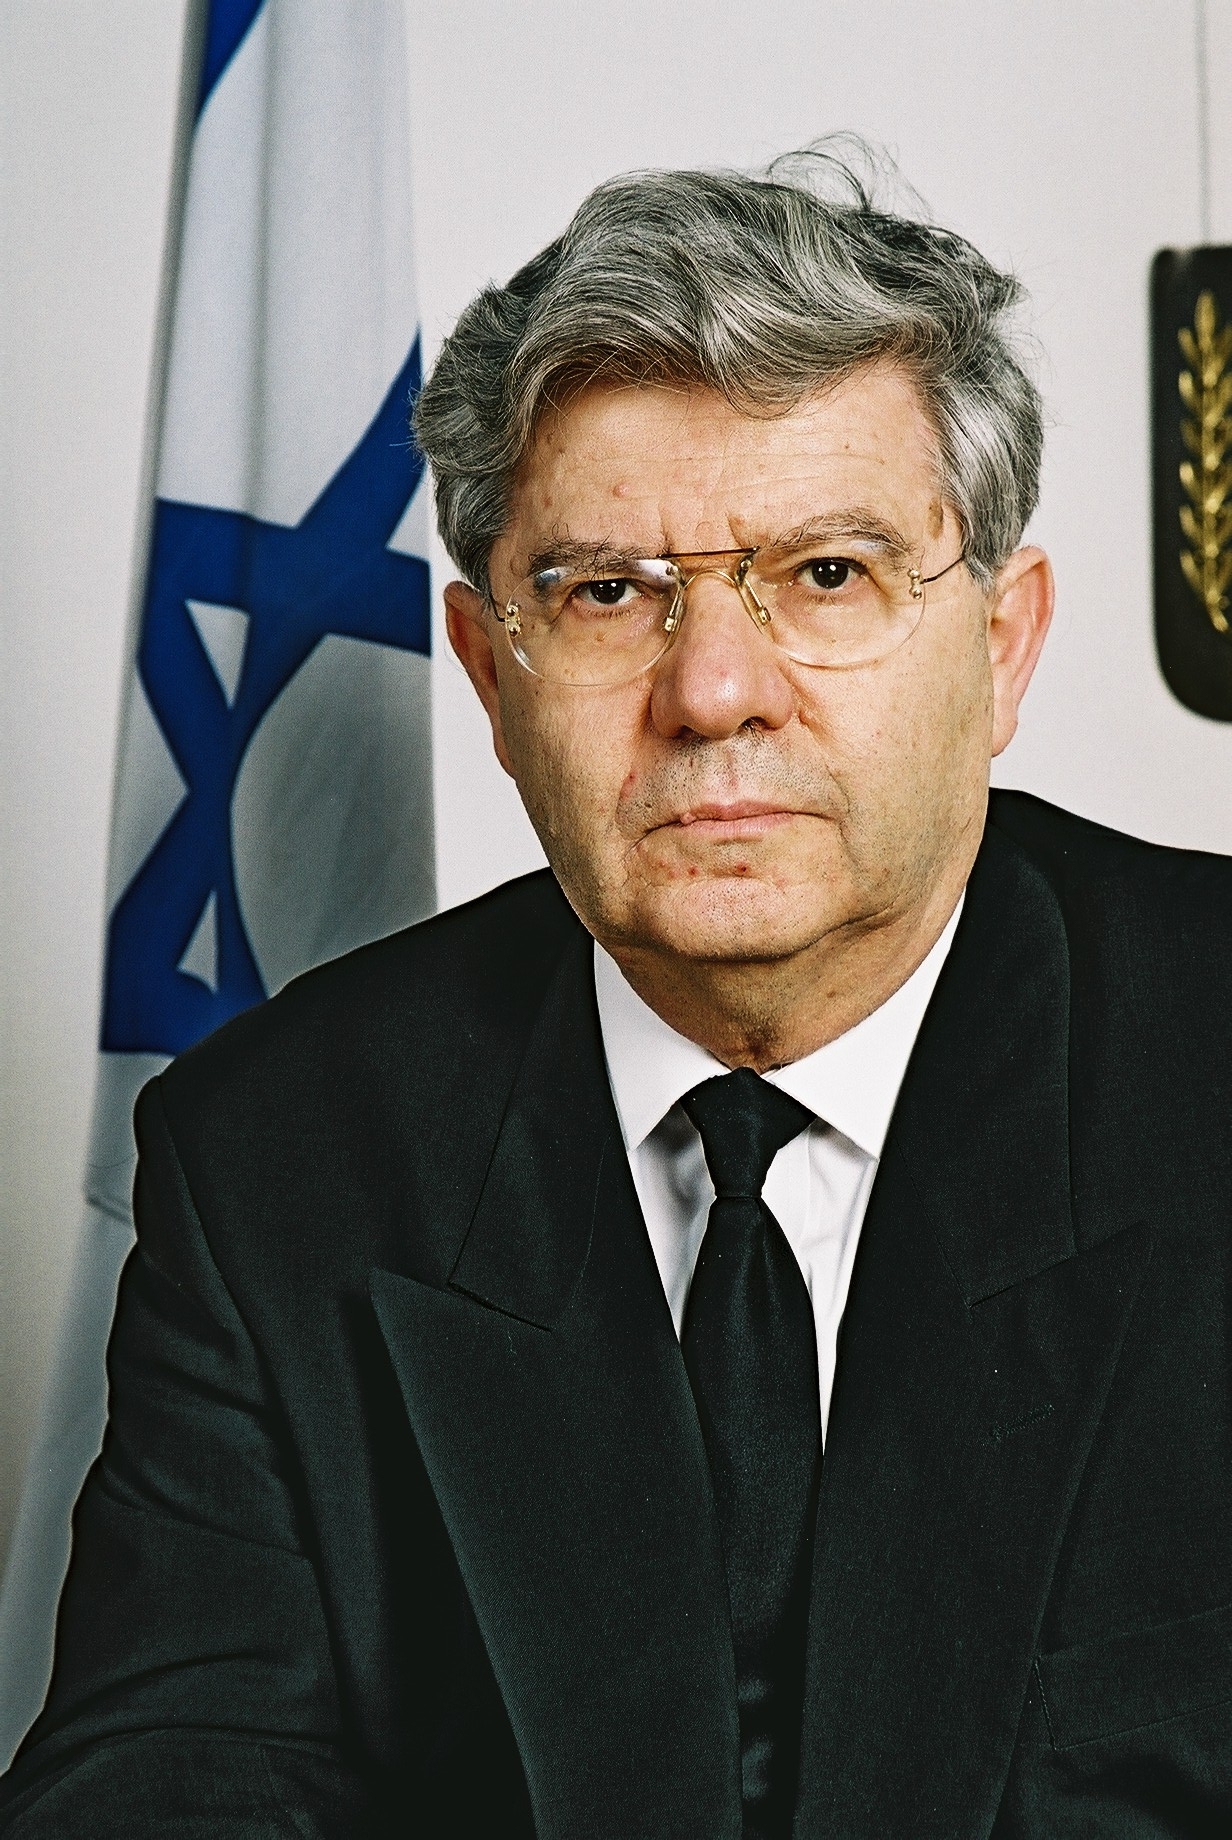 Aharon Barak